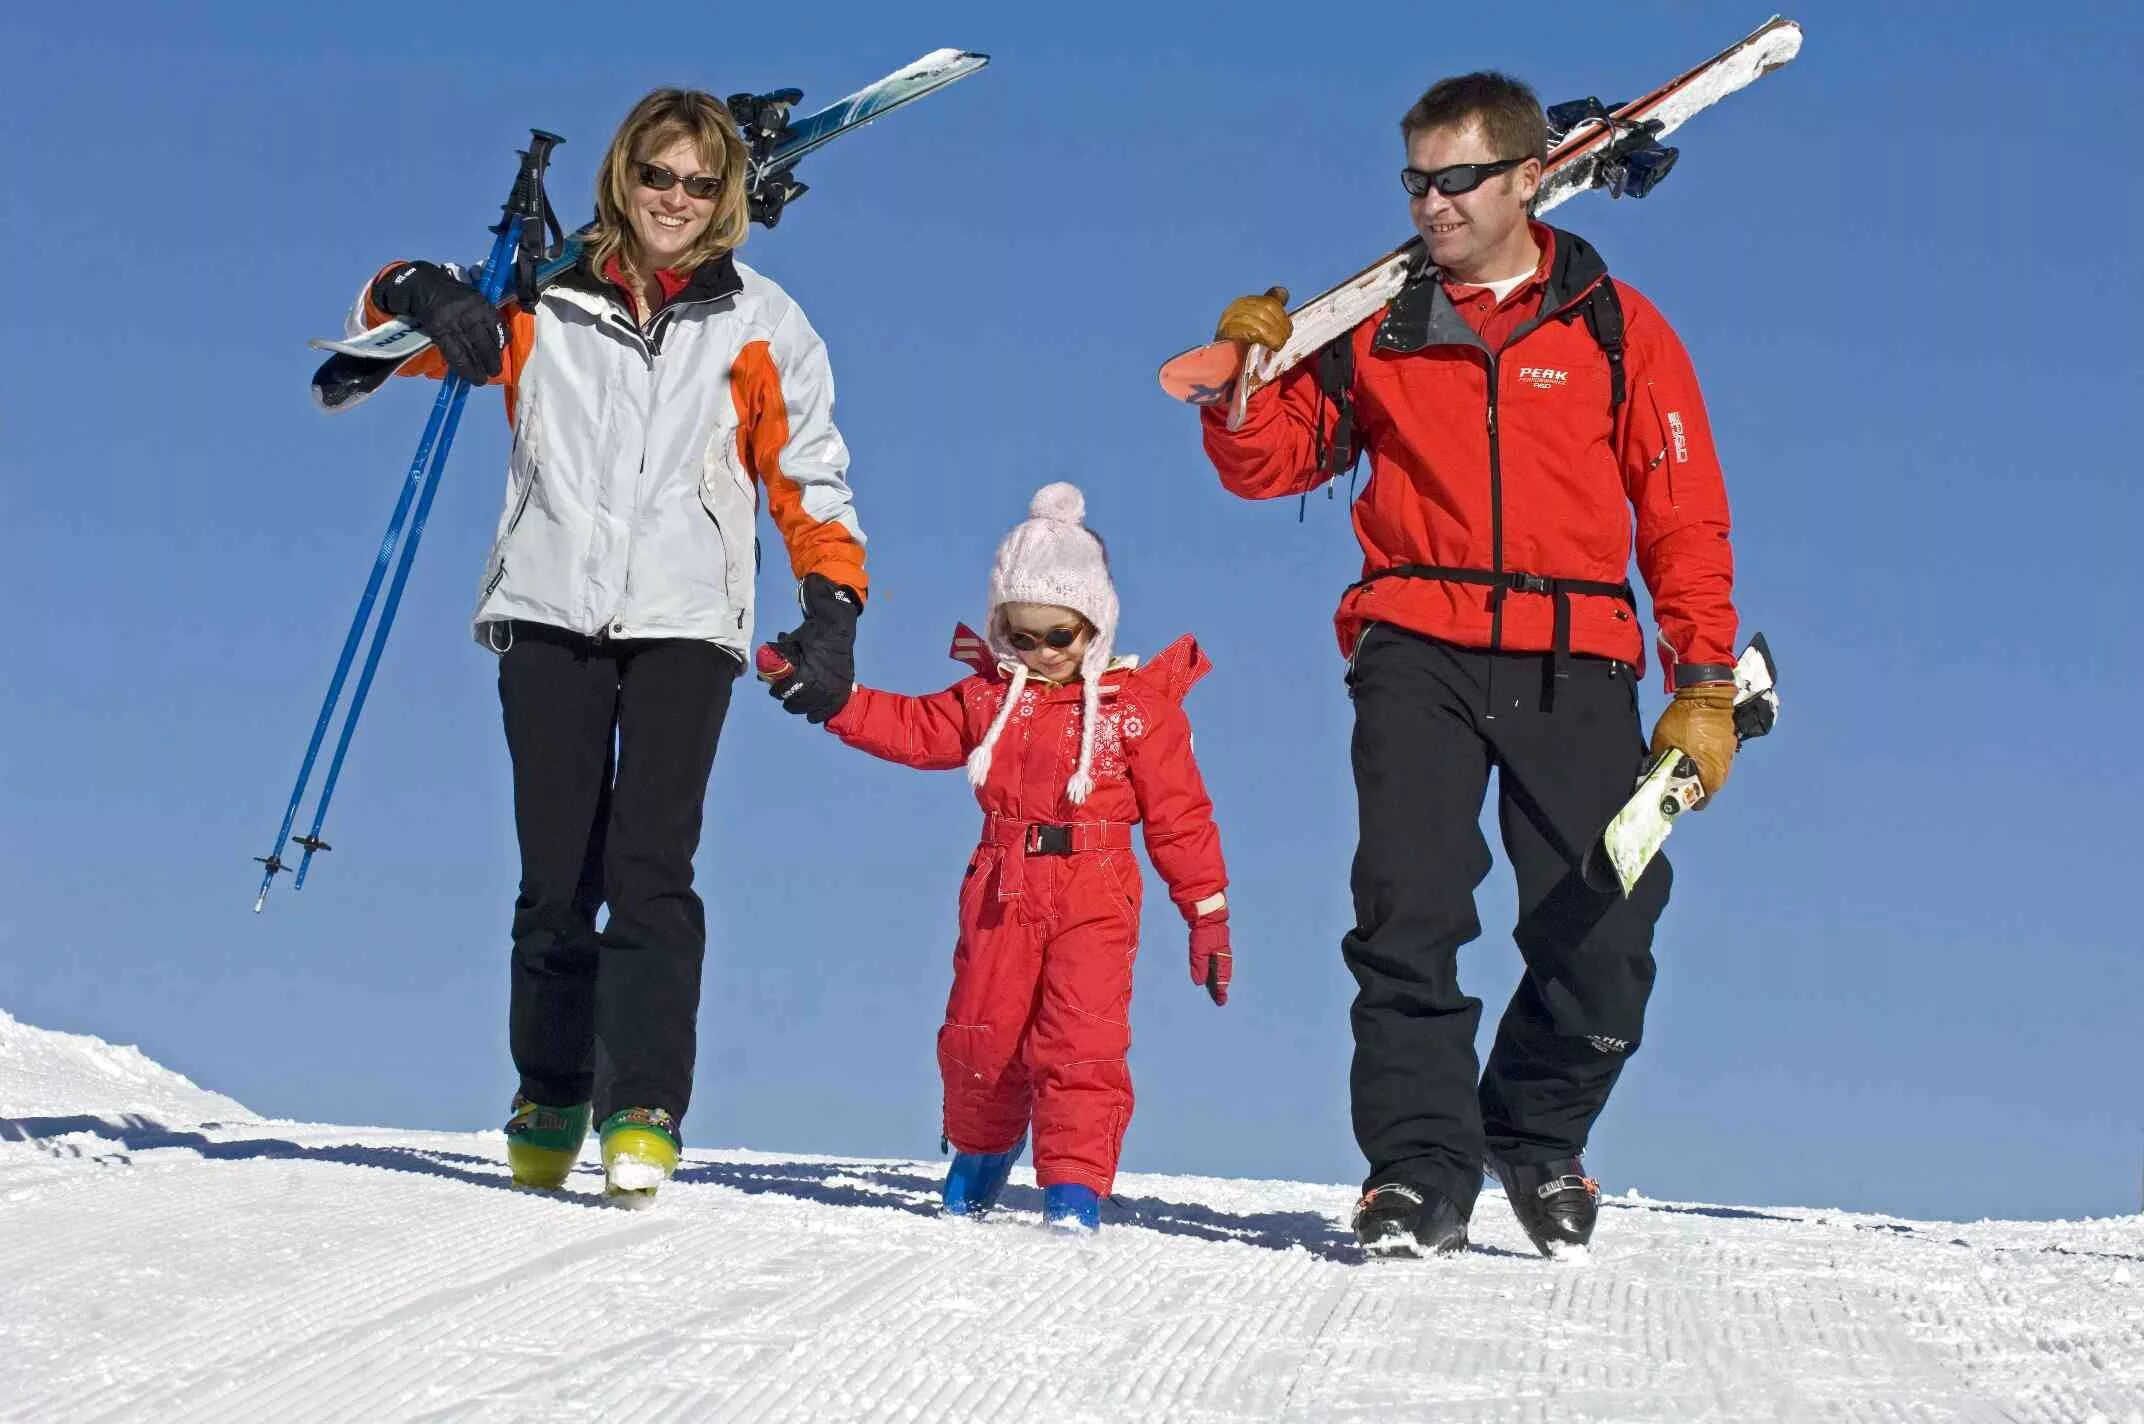 Дети на горных лыжах. Прогулка семьей на лыжах. Семья на лыжах. Лыжники дети. Семья лыжников